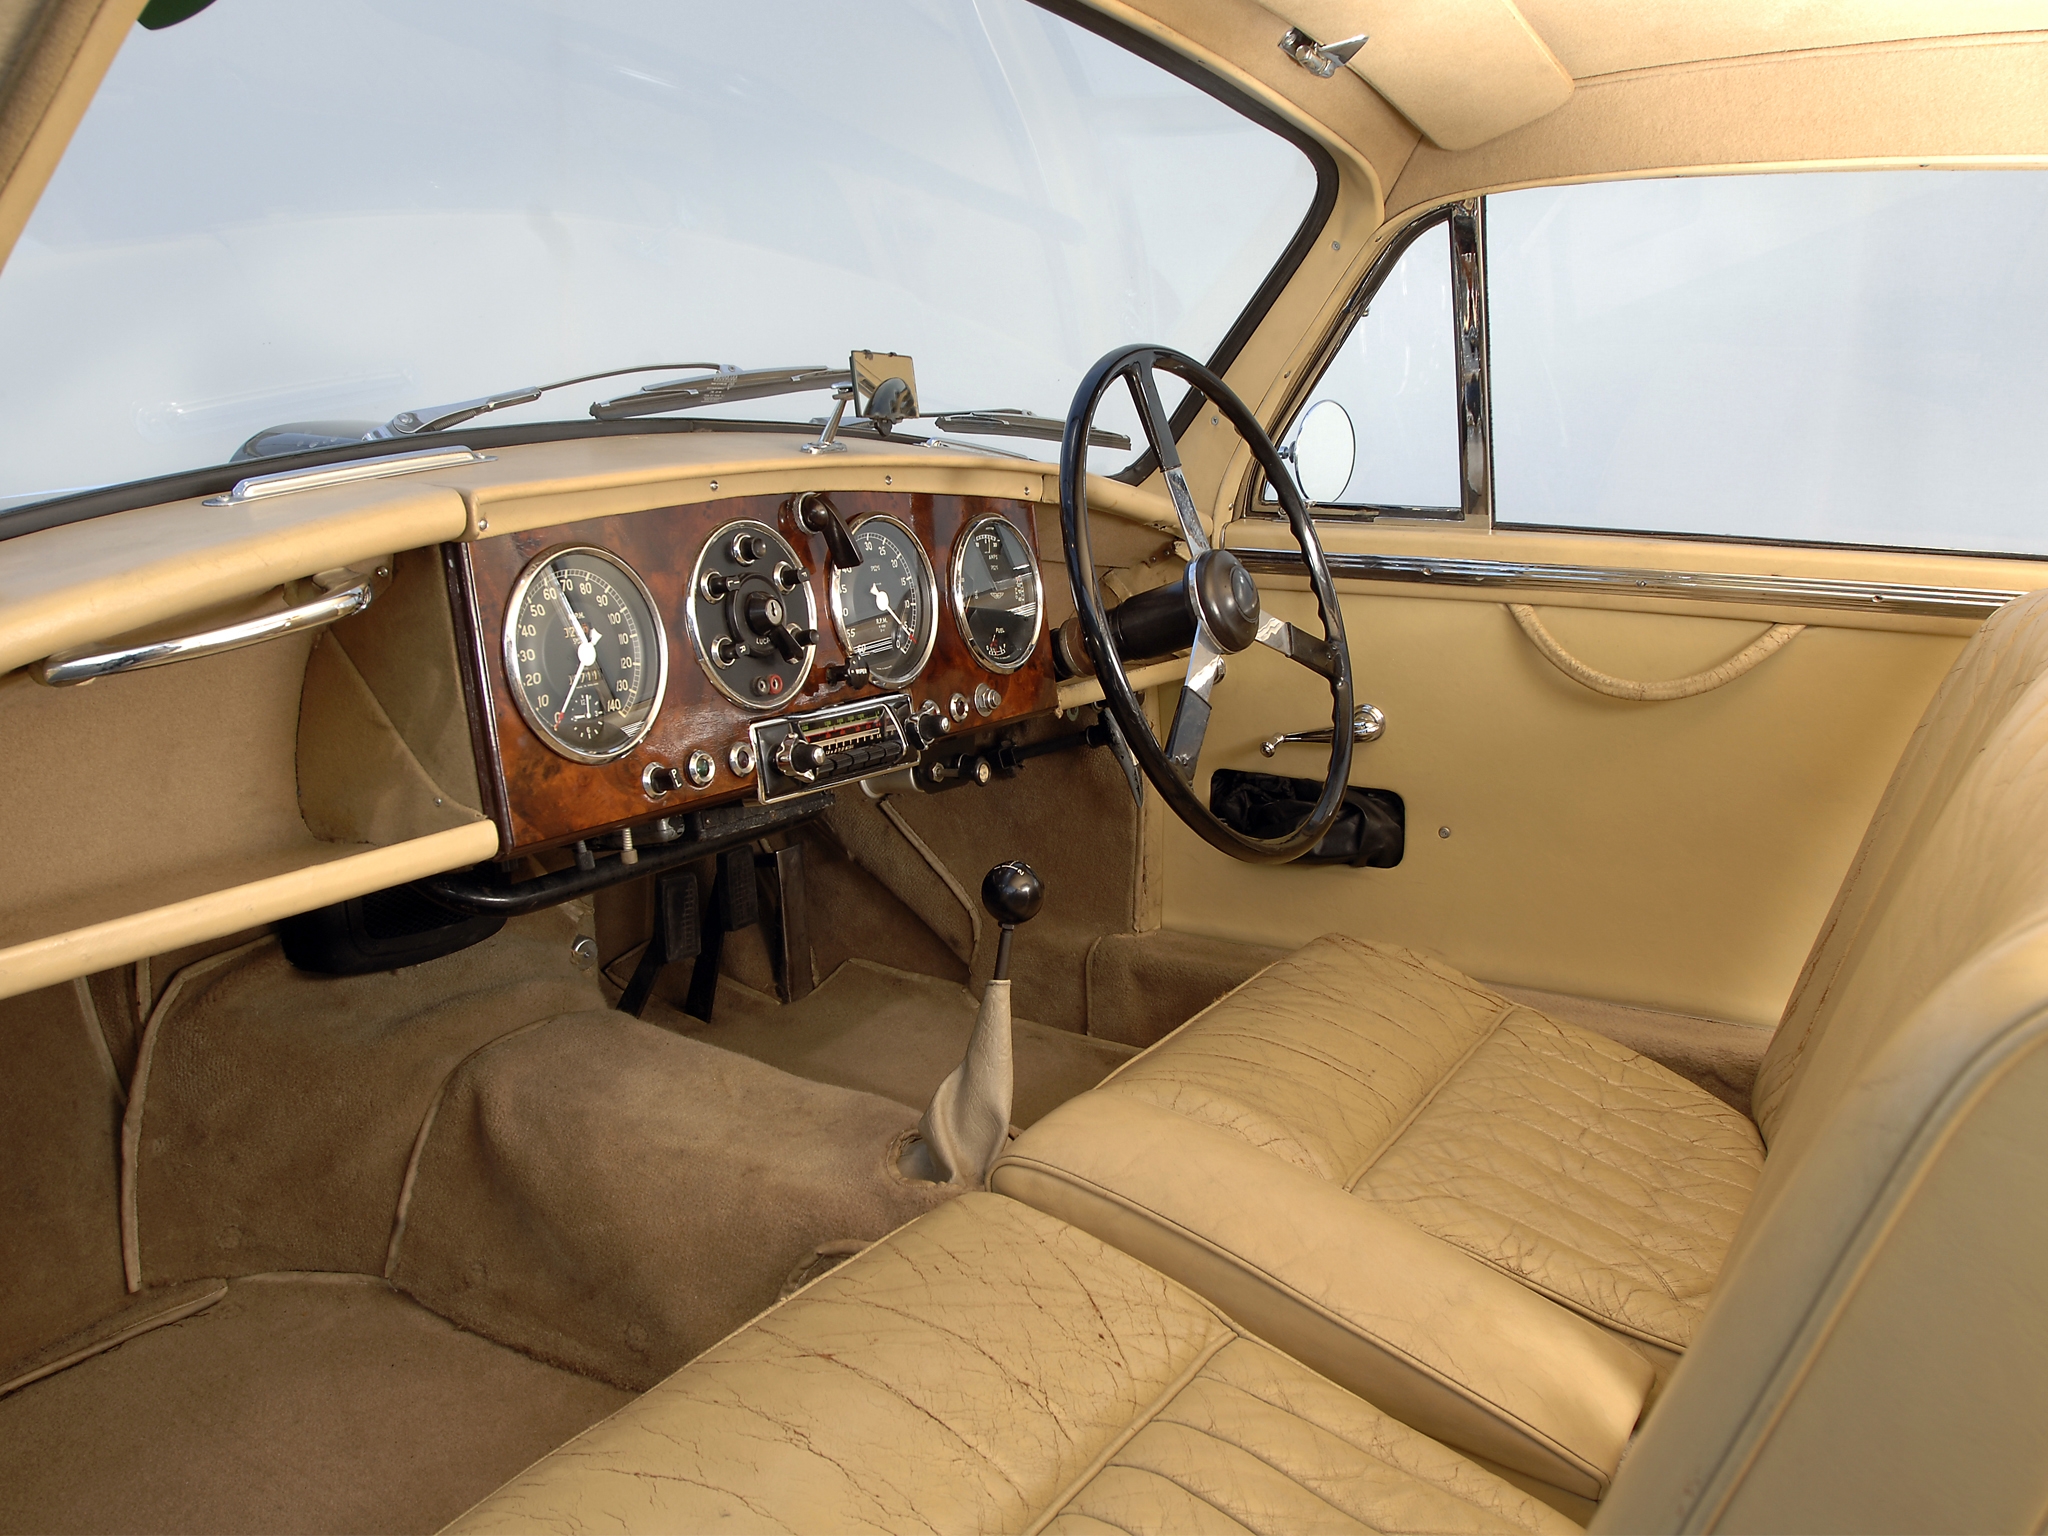 cars, salon, interior, aston martin, retro, steering wheel, rudder, speedometer, beige, 1950